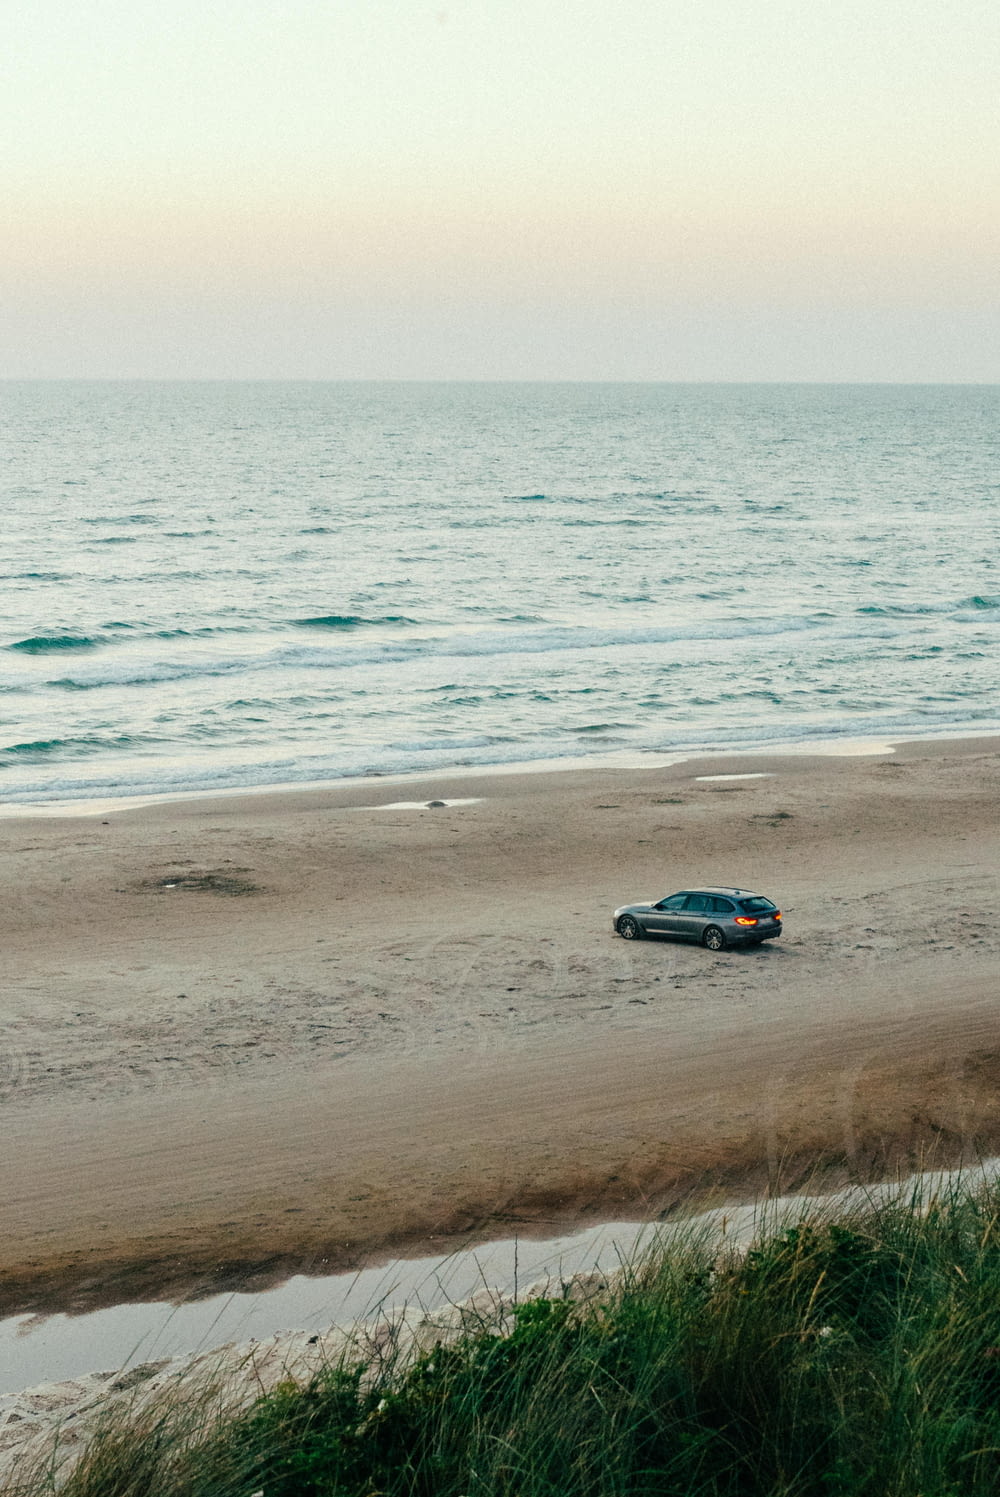 a car driving on a beach